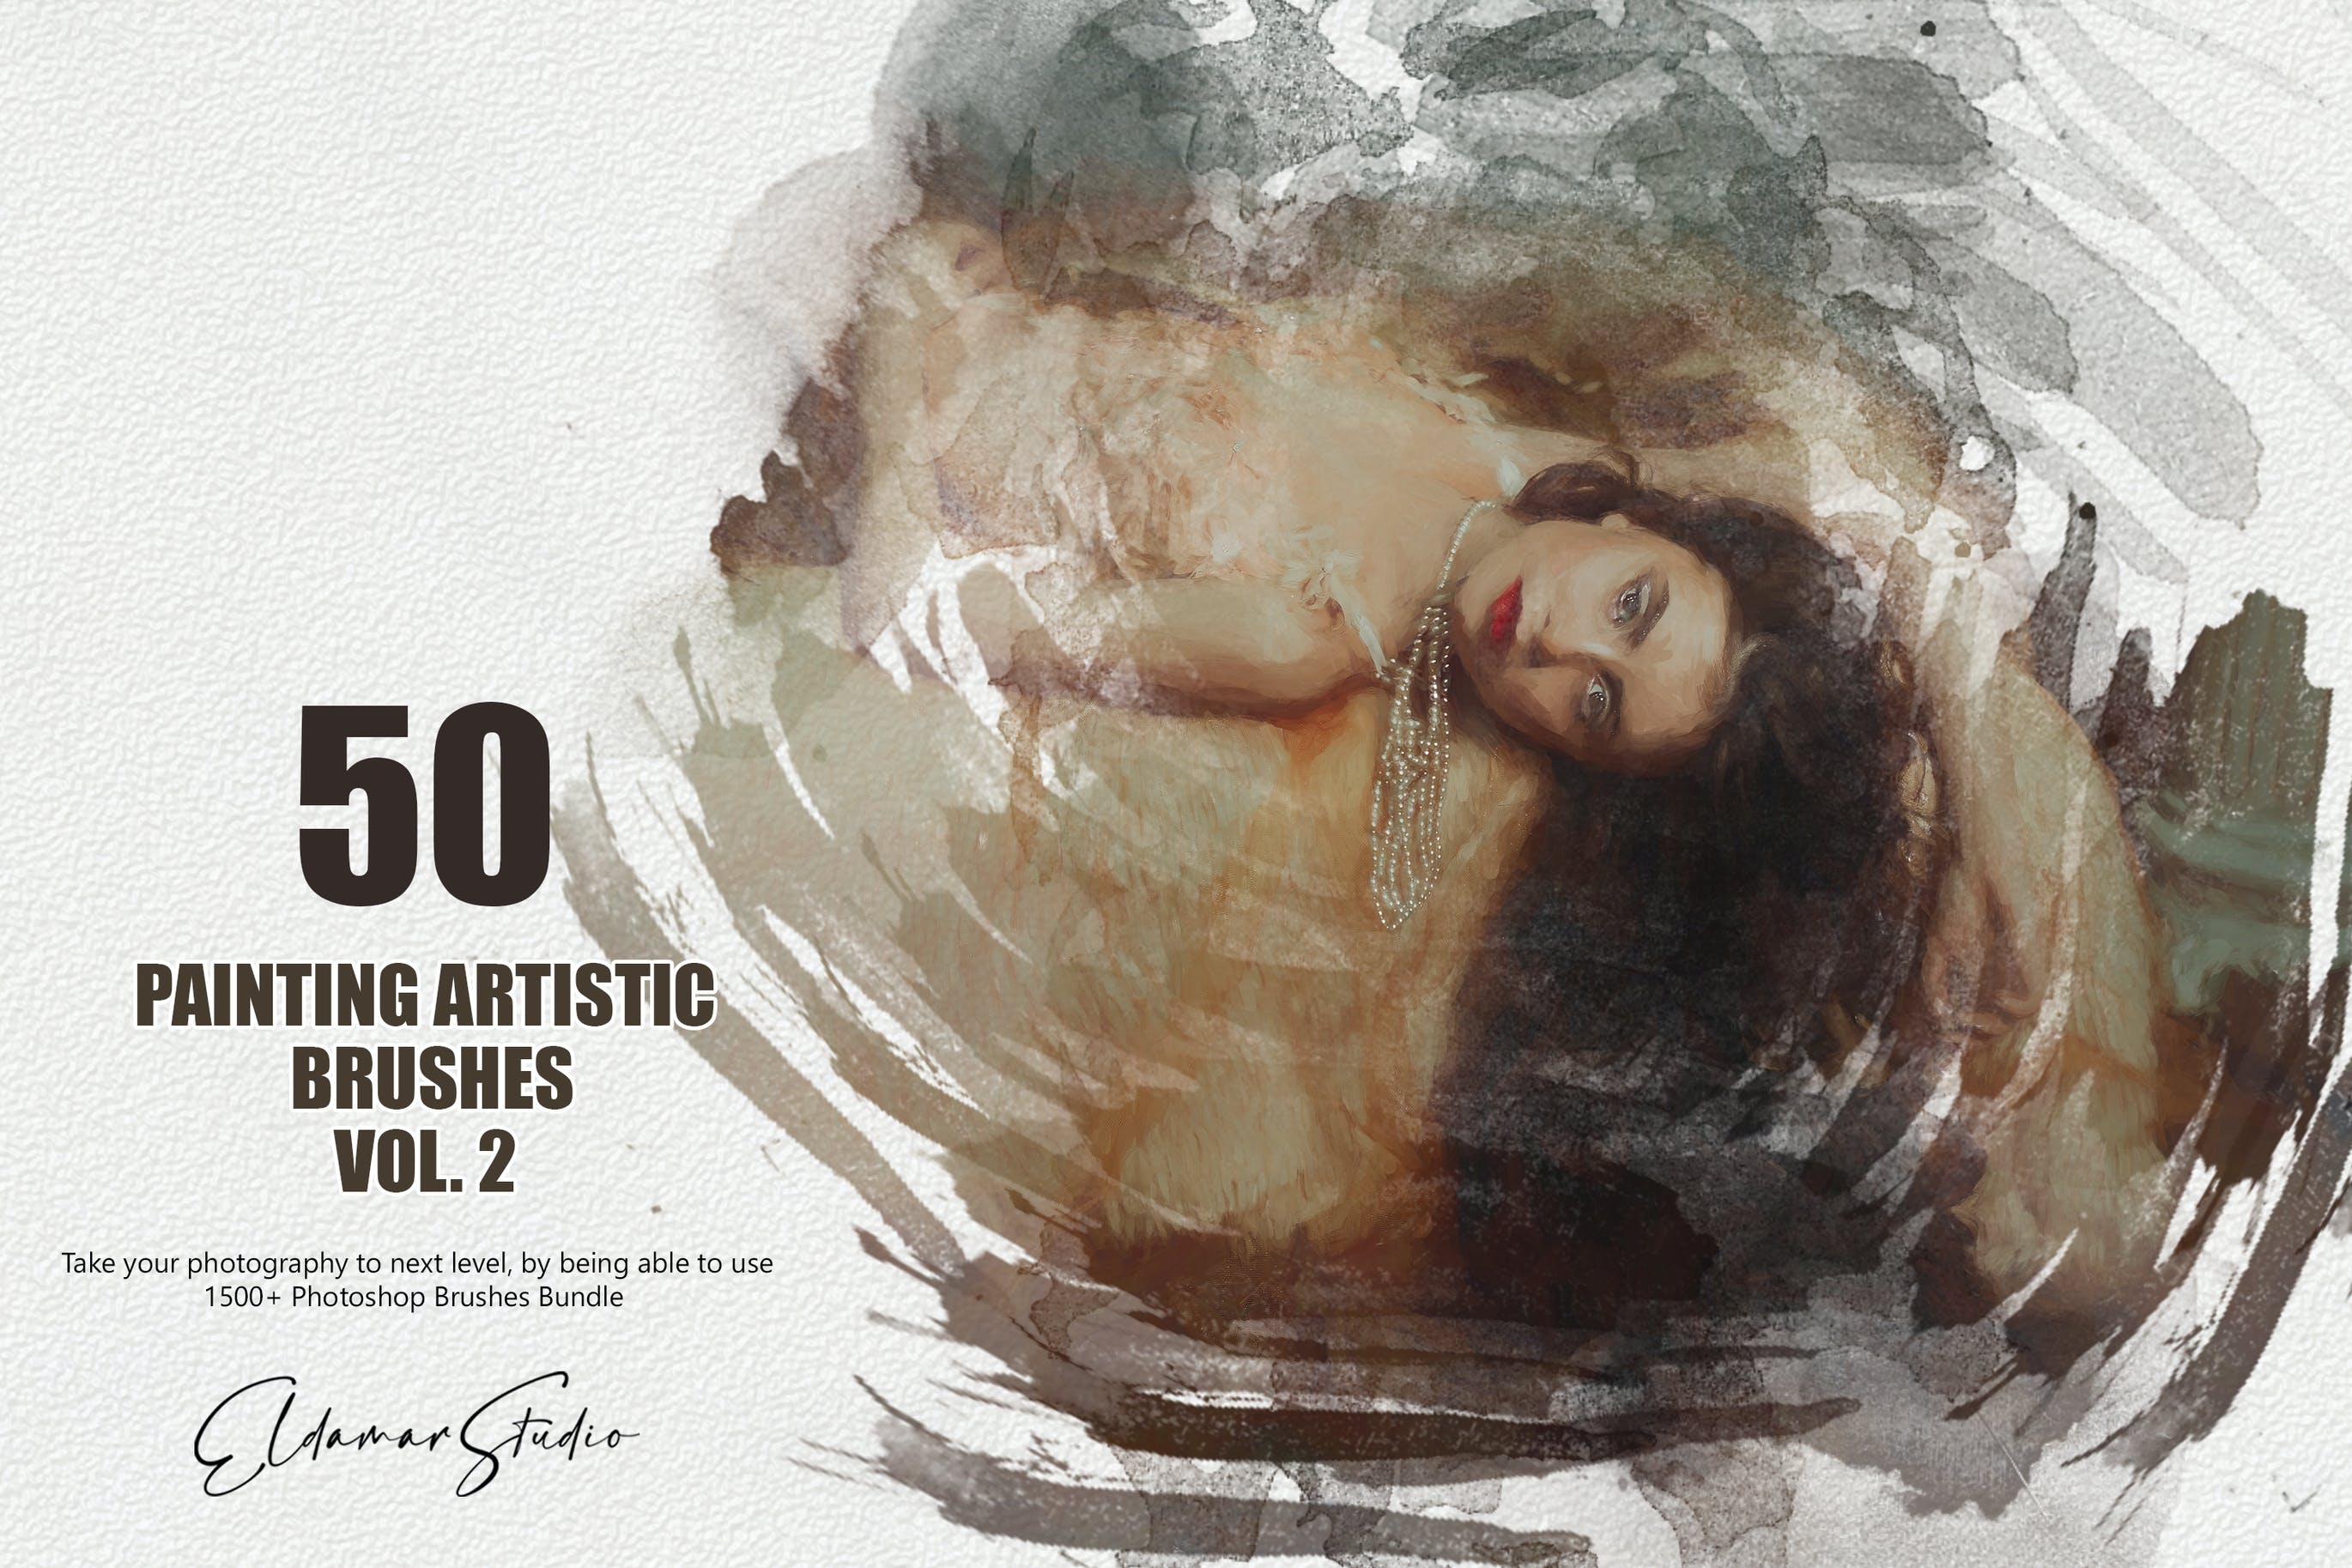 50个水彩艺术绘画笔刷素材v2 50 Painting Artistic Brushes – Vol. 2 笔刷资源 第1张